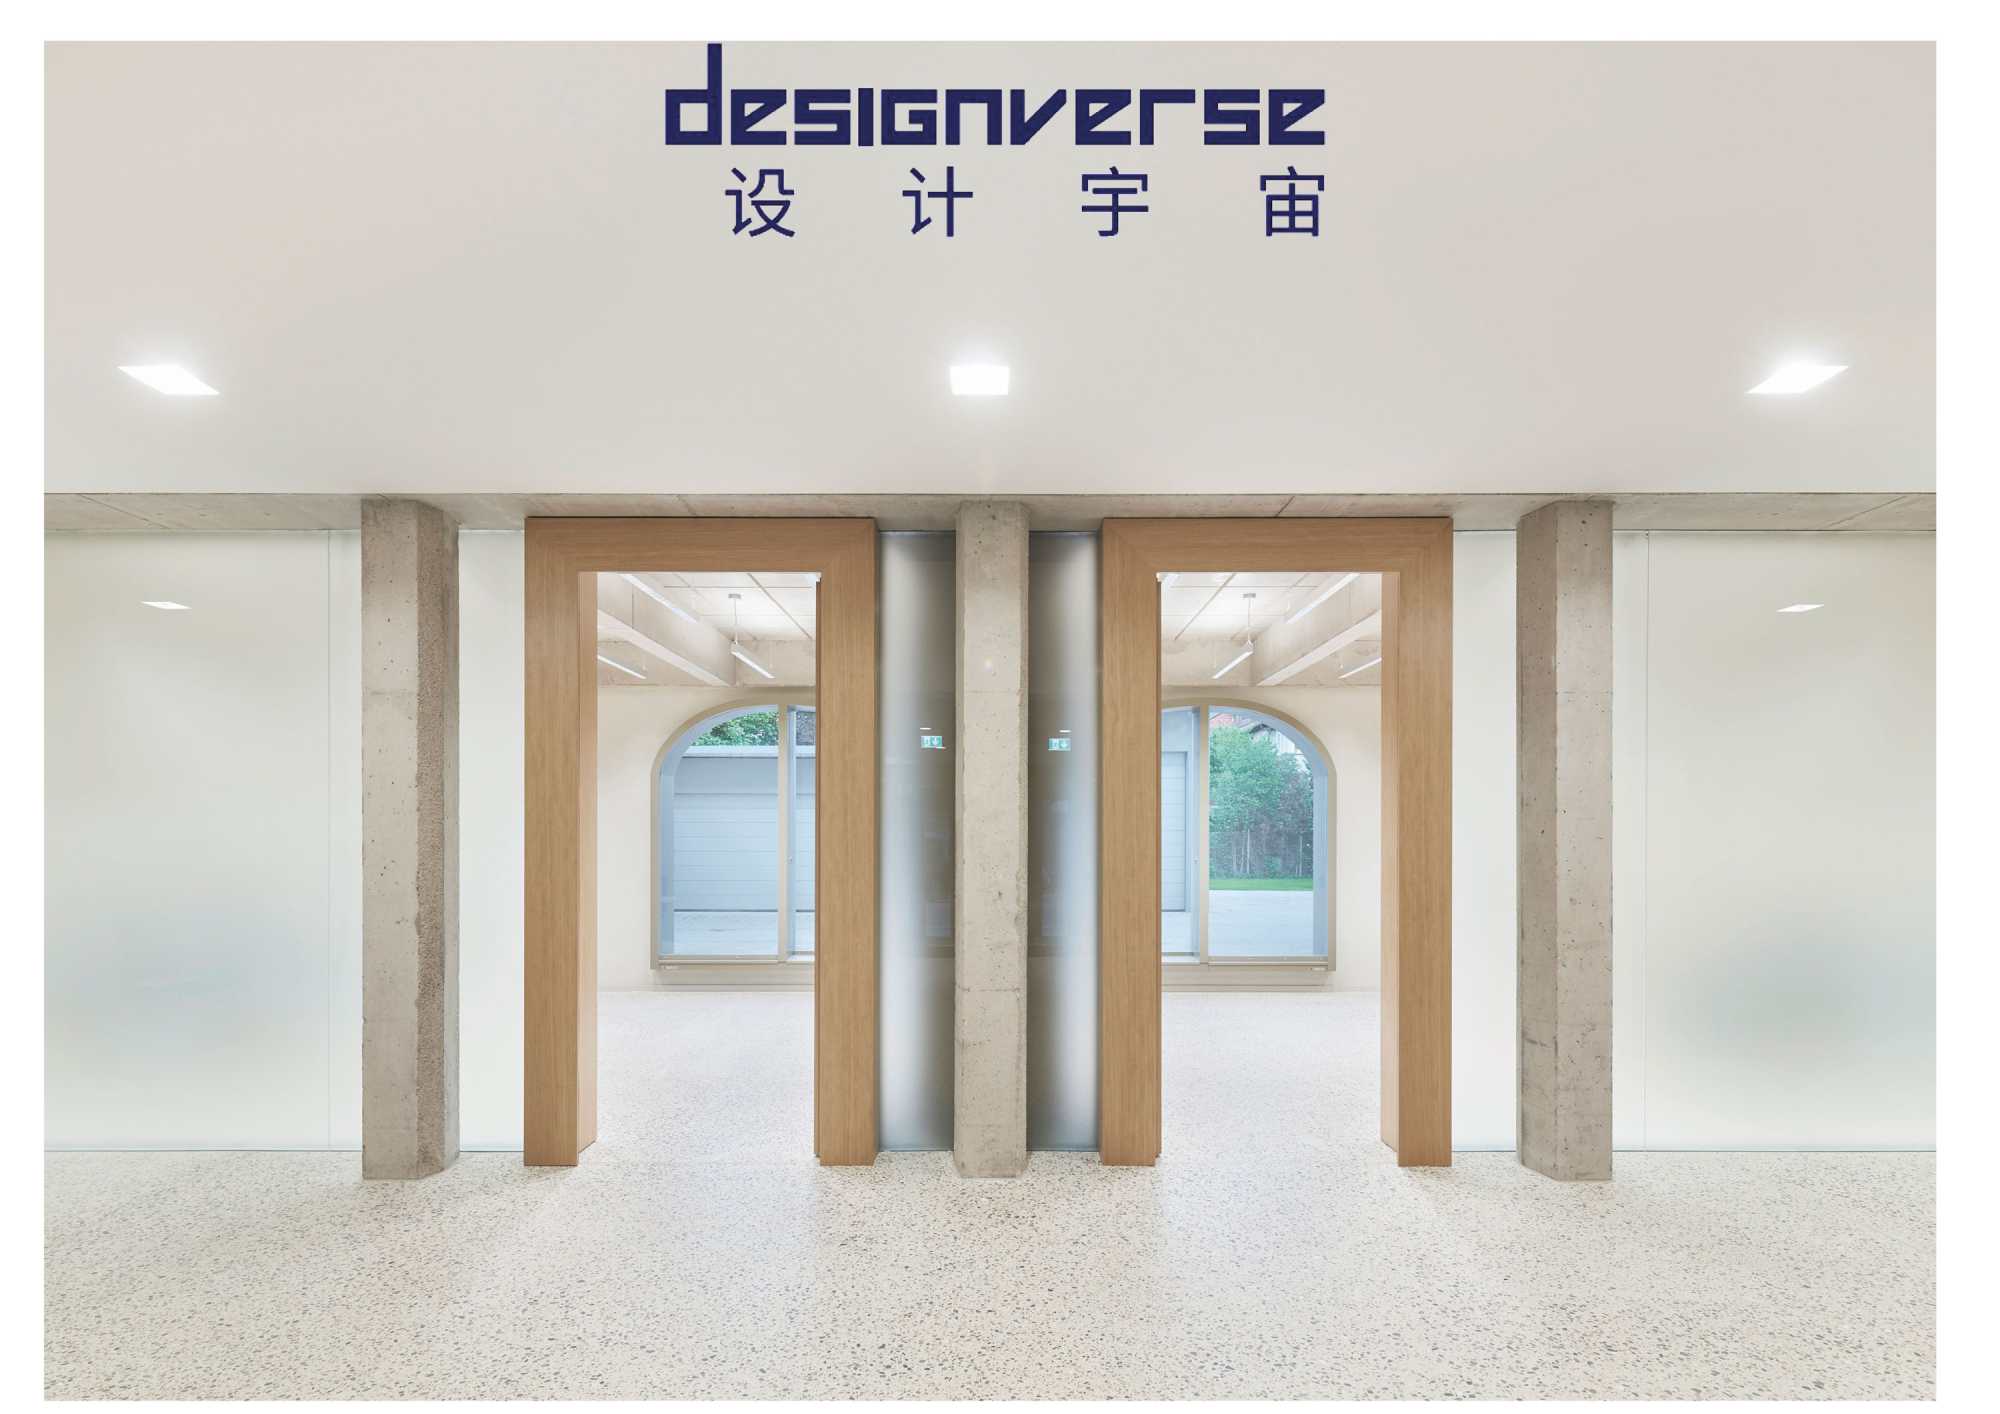 designverse mit Sitz in Shanghai publiziert die denkmalpflegerische Sanierung und Umbau des Amtsgerichts Tübingen ({project_images:field_row_count})